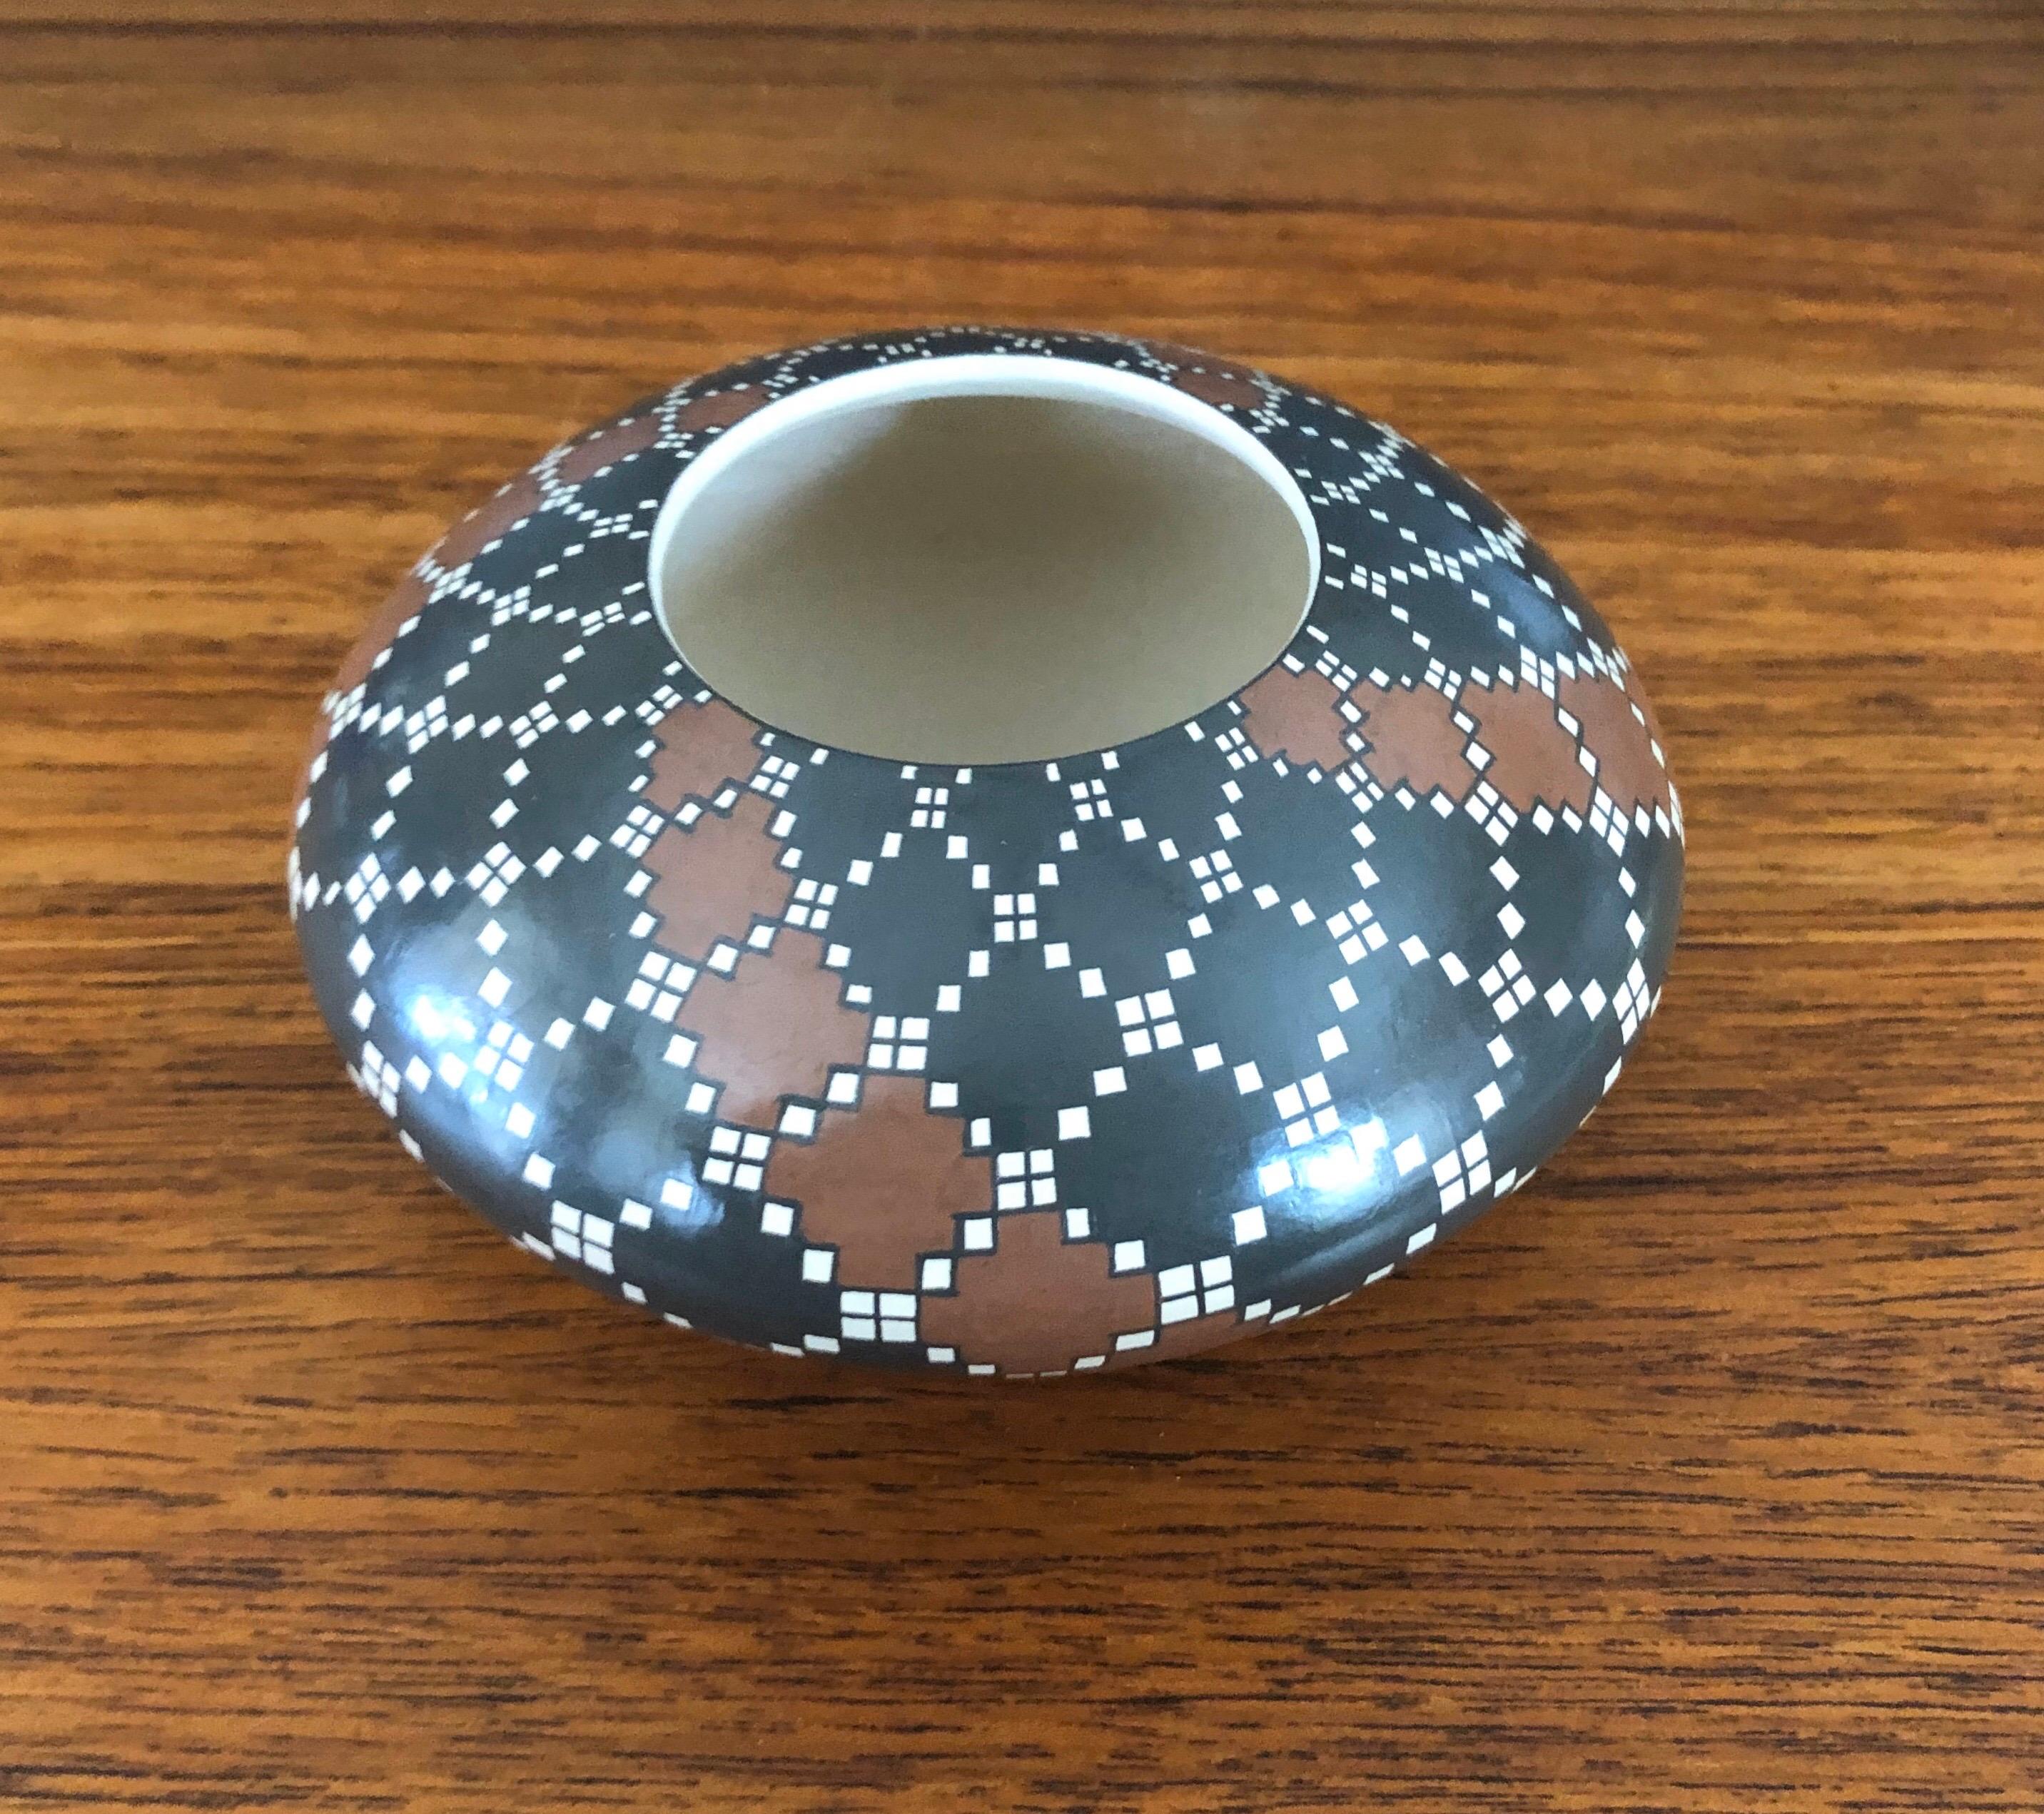 Magnifique vase géométrique Mata Ortiz polychrome tourné à la main par Juana Ledezma Vecoz, vers les années 1980.

La poterie de Mata Ortiz ou Casas Grandes provient du petit village de Mata Ortiz situé près de Nuevo Casas Grandes dans le nord de